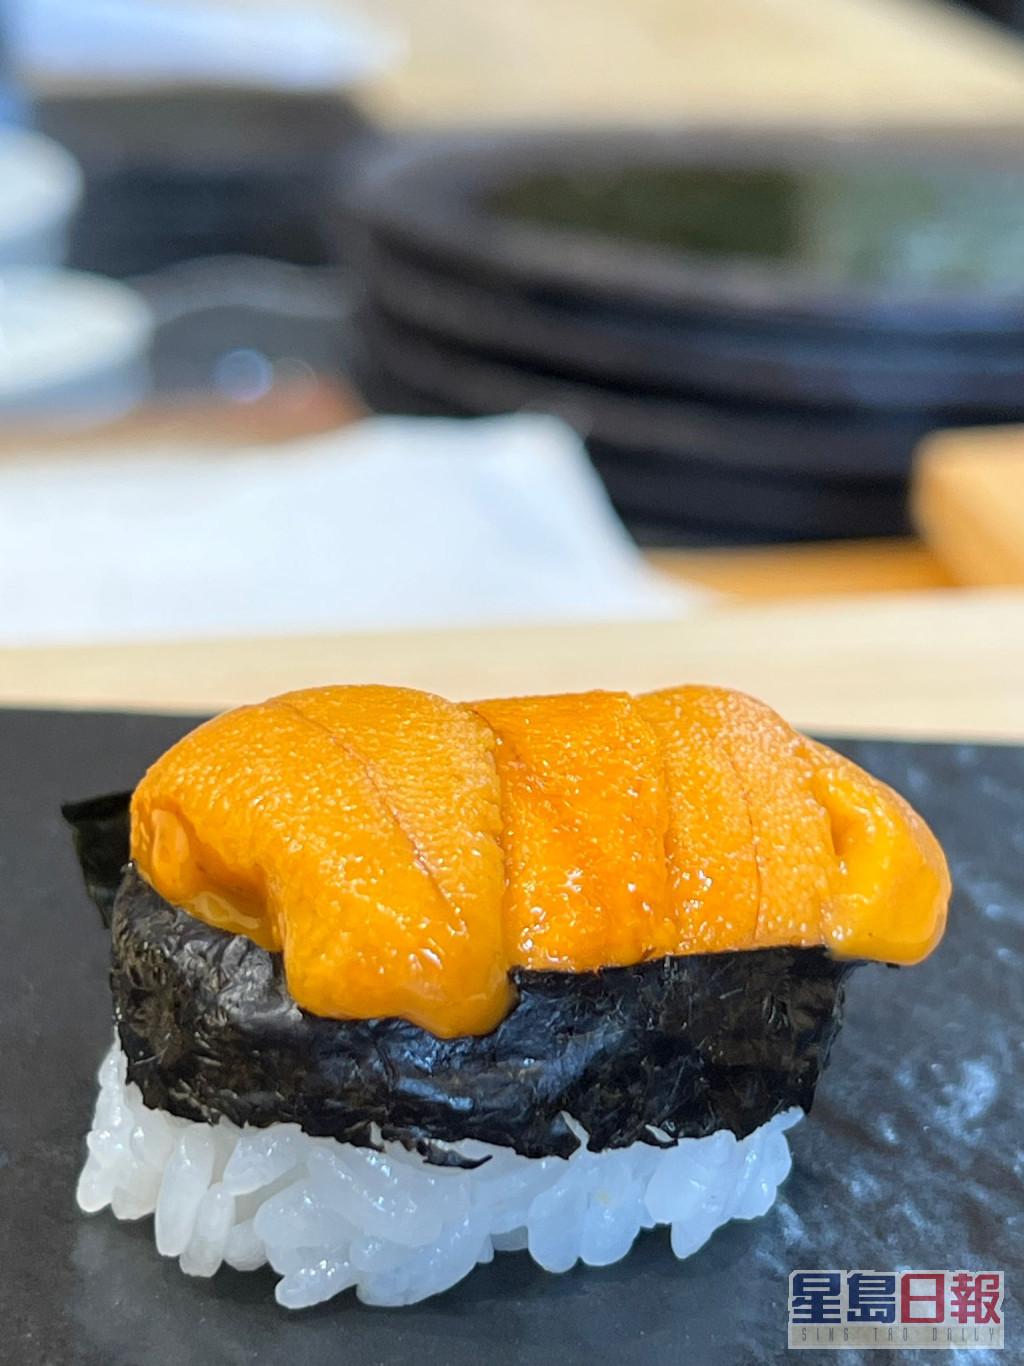 海膽滿滿嘅壽司好吸引呀。